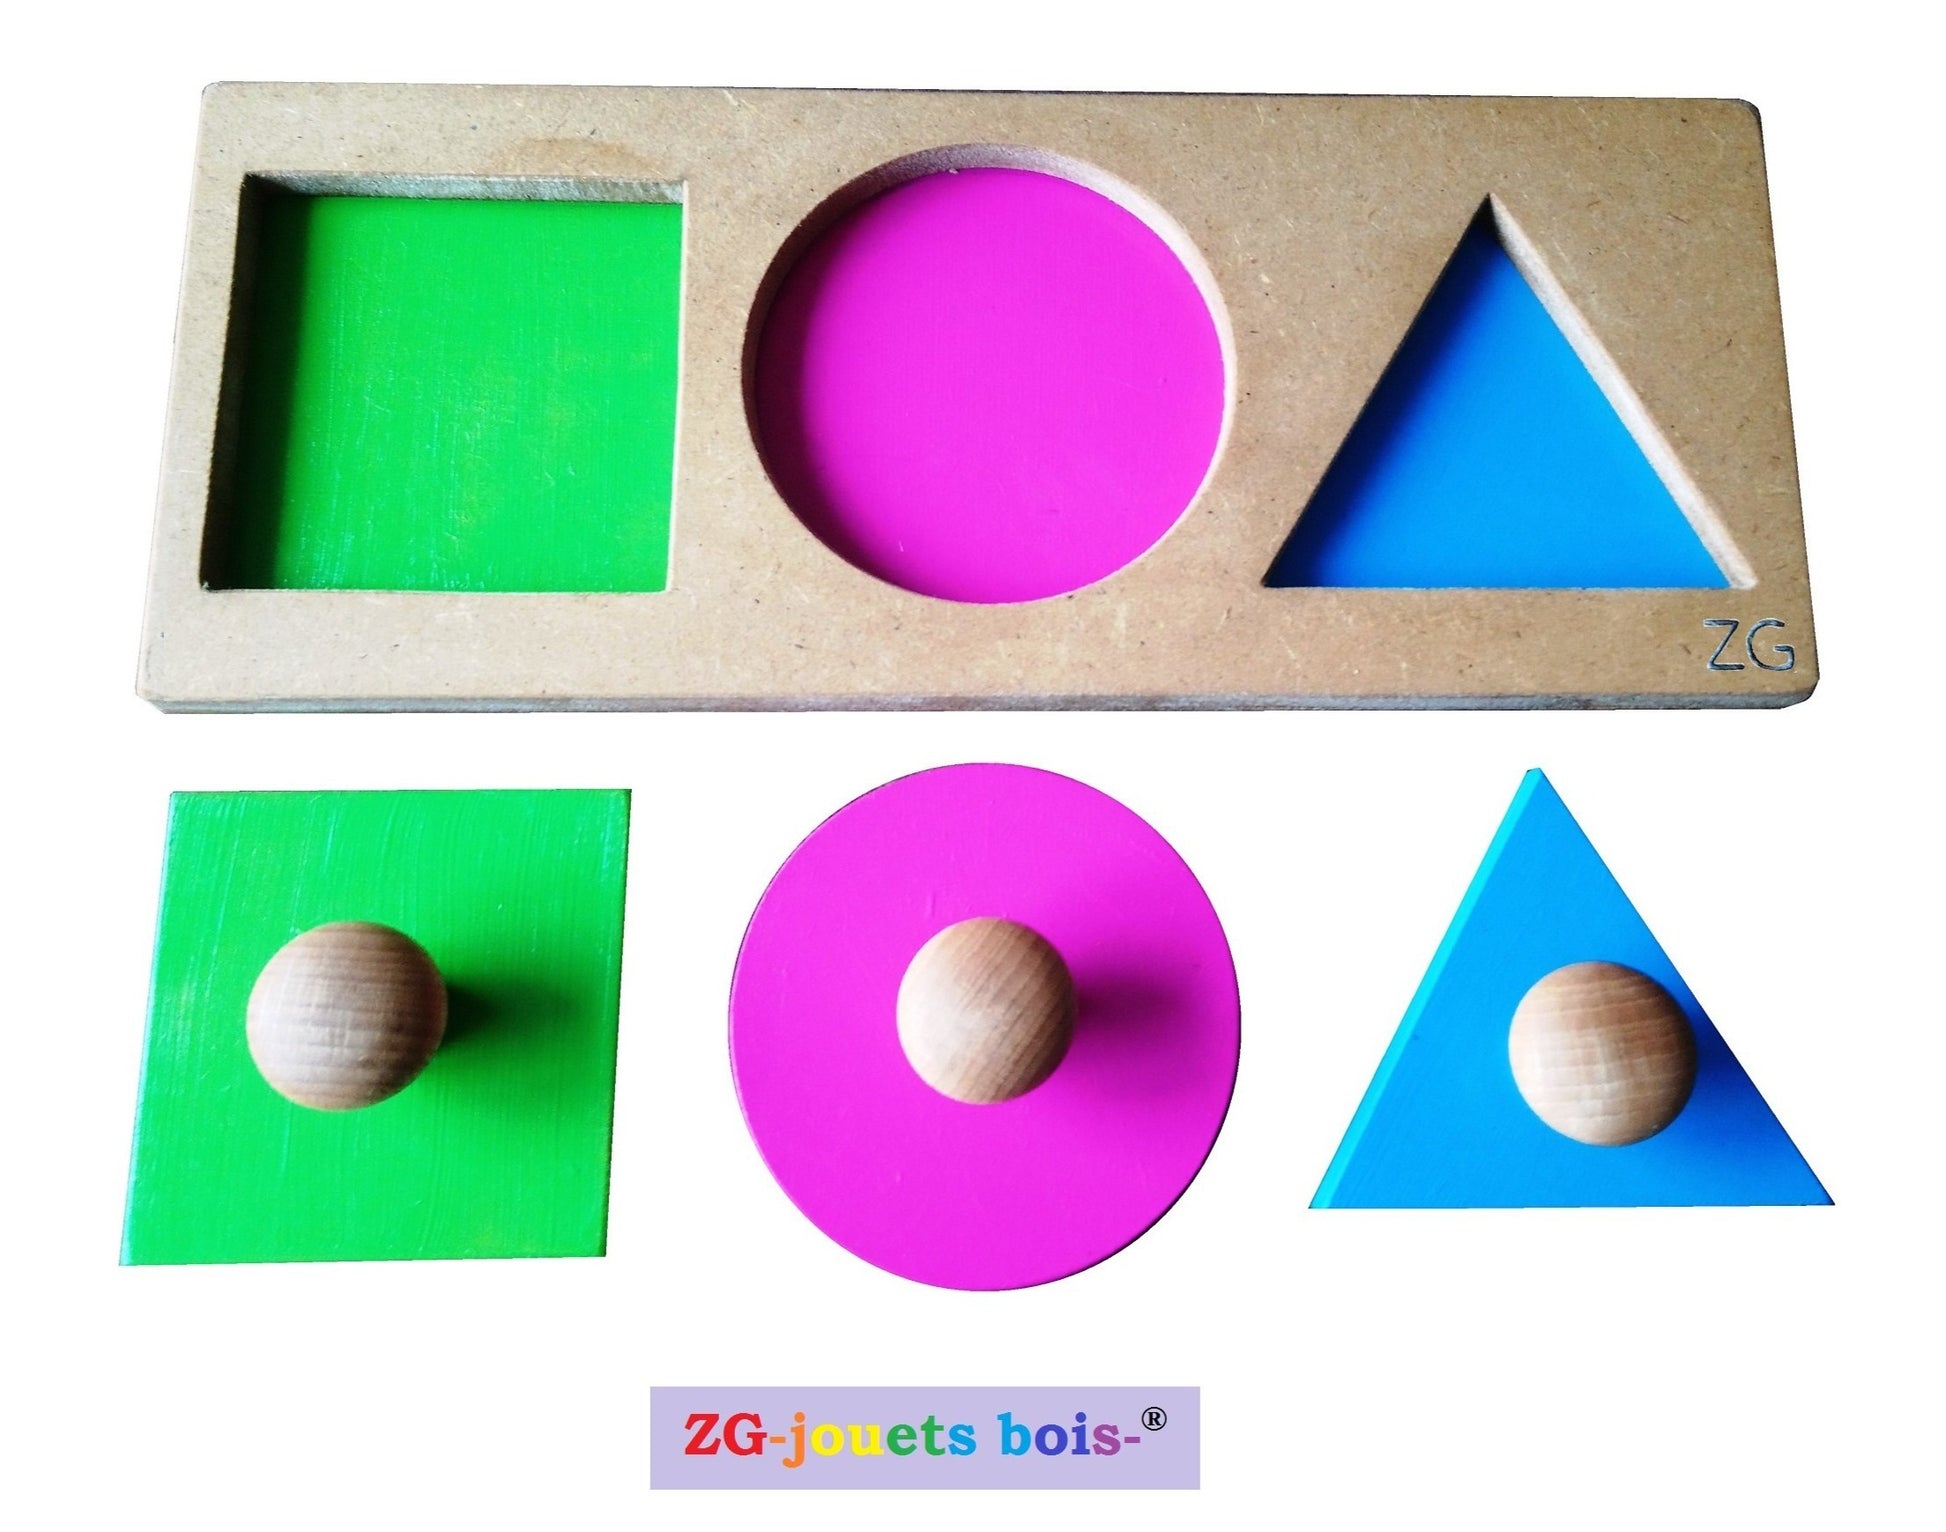 puzzle encastrement trois formes, couleurs vives rose vert turquoise, pédagogie montessori, premier âge, nido, fabrication artisanale française ZG-jouetsbois-